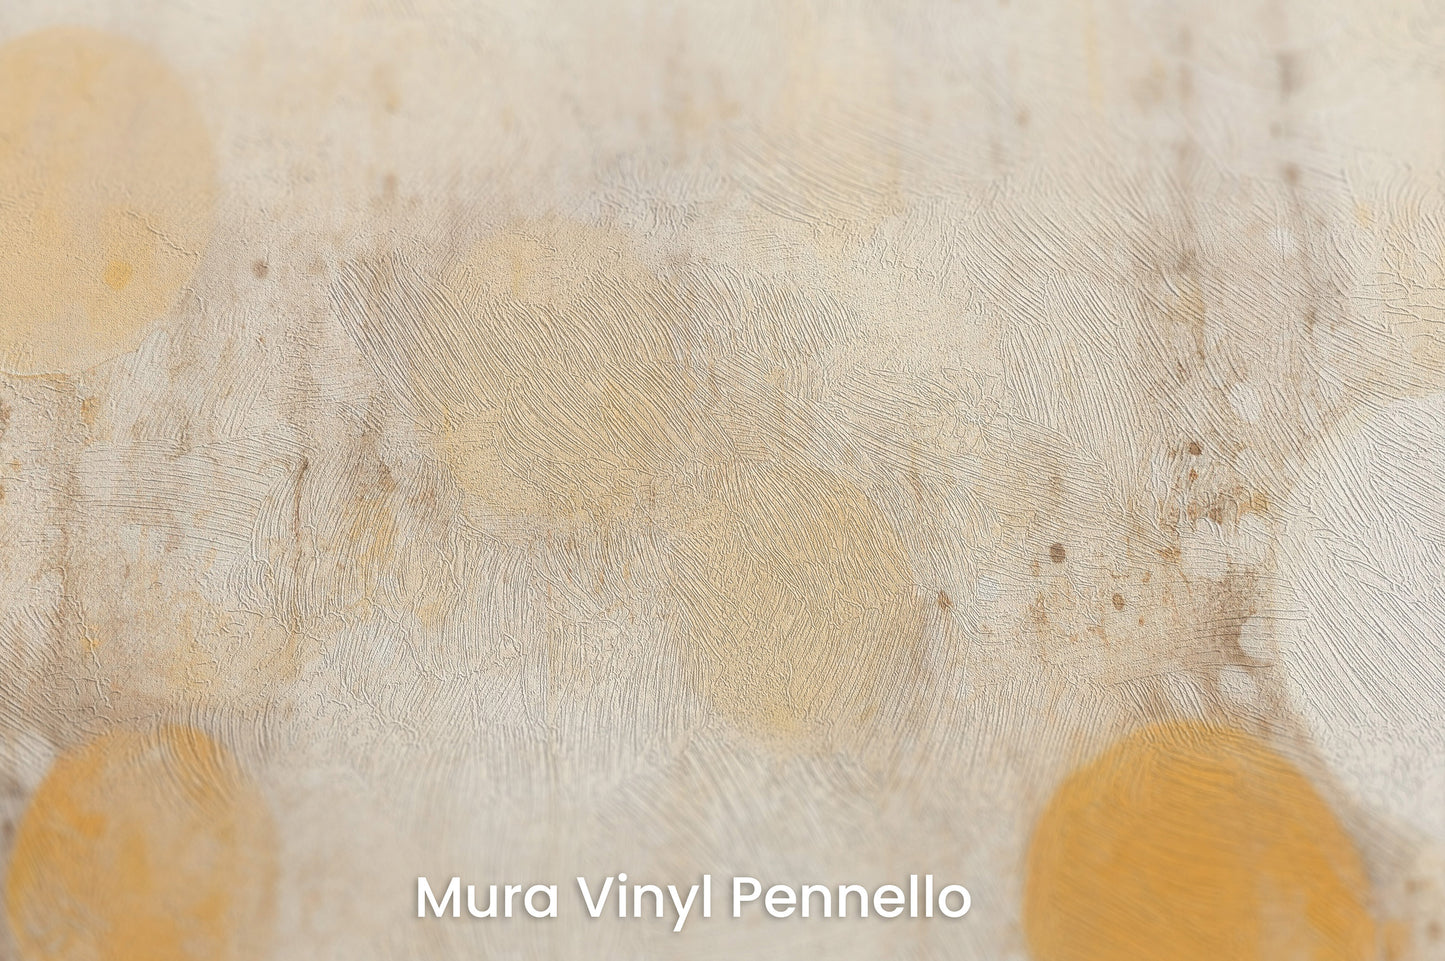 Zbliżenie na artystyczną fototapetę o nazwie SOLAR WHISPERS na podłożu Mura Vinyl Pennello - faktura pociągnięć pędzla malarskiego.